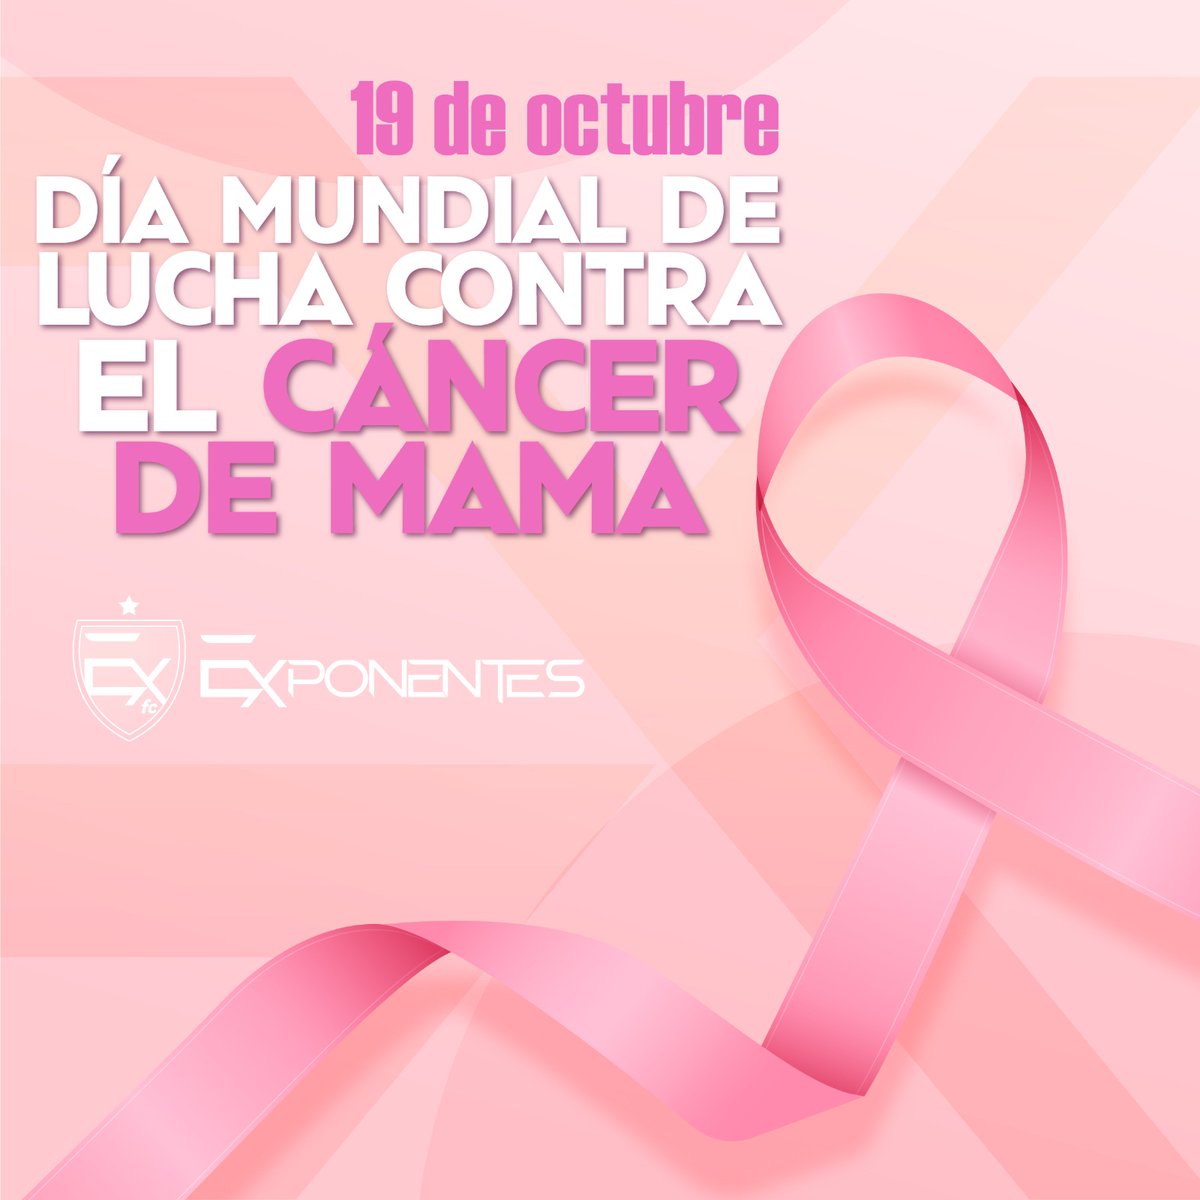 El cáncer de mama es el más común y de las principales cuasas de muerte de mujeres en América Latina. 

Por ello en Exponentes nos sumamos a la prevención y detección oportuna.

#DiaMundialContraElCancerDeMama